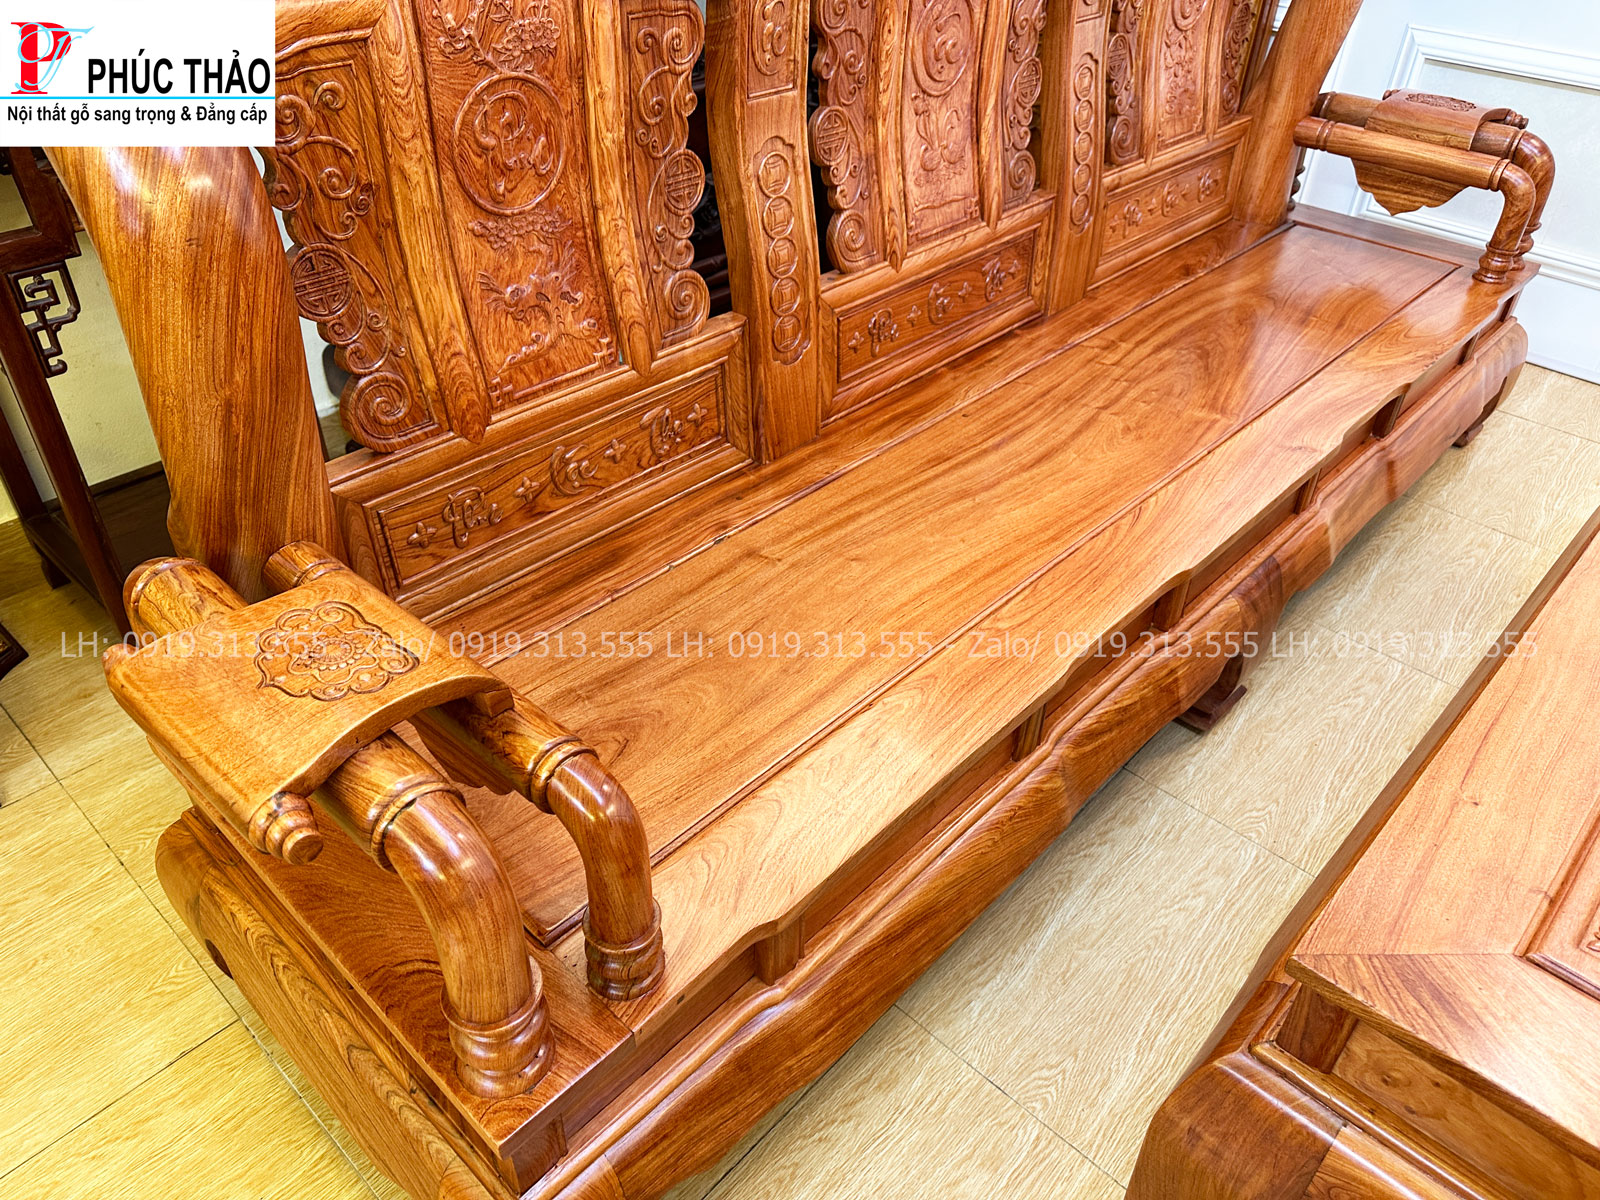 Bàn ghế tần thủy hoàng gỗ gõ sở hữu thiết kế độc đáo